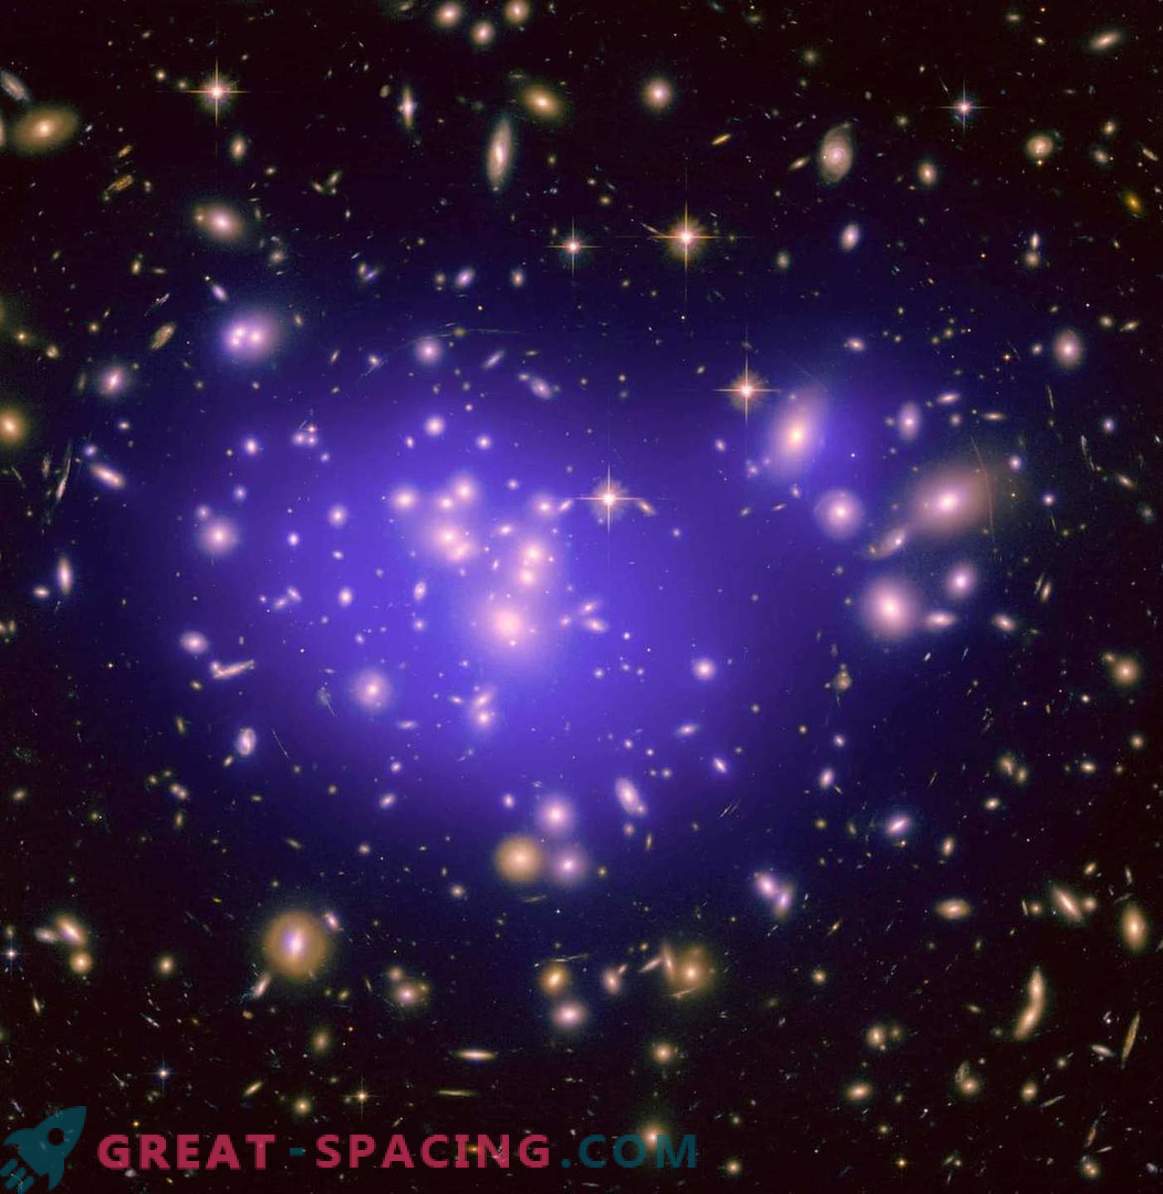 Kas atsirado anksčiau: galaktikos ar juodosios skylės